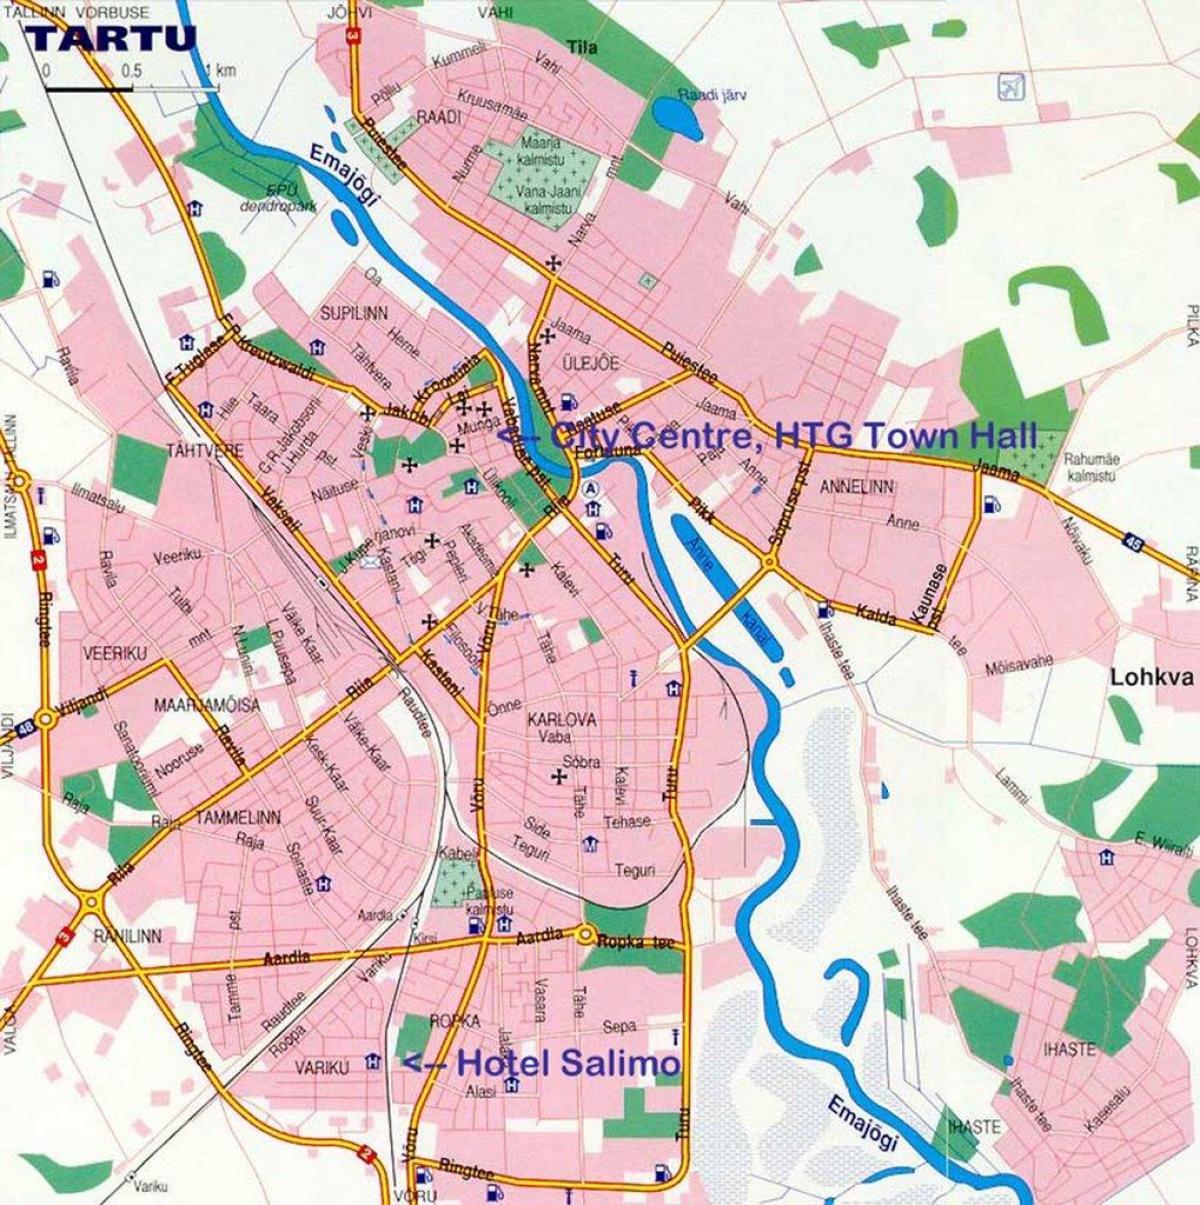 harta e tartu Estonia